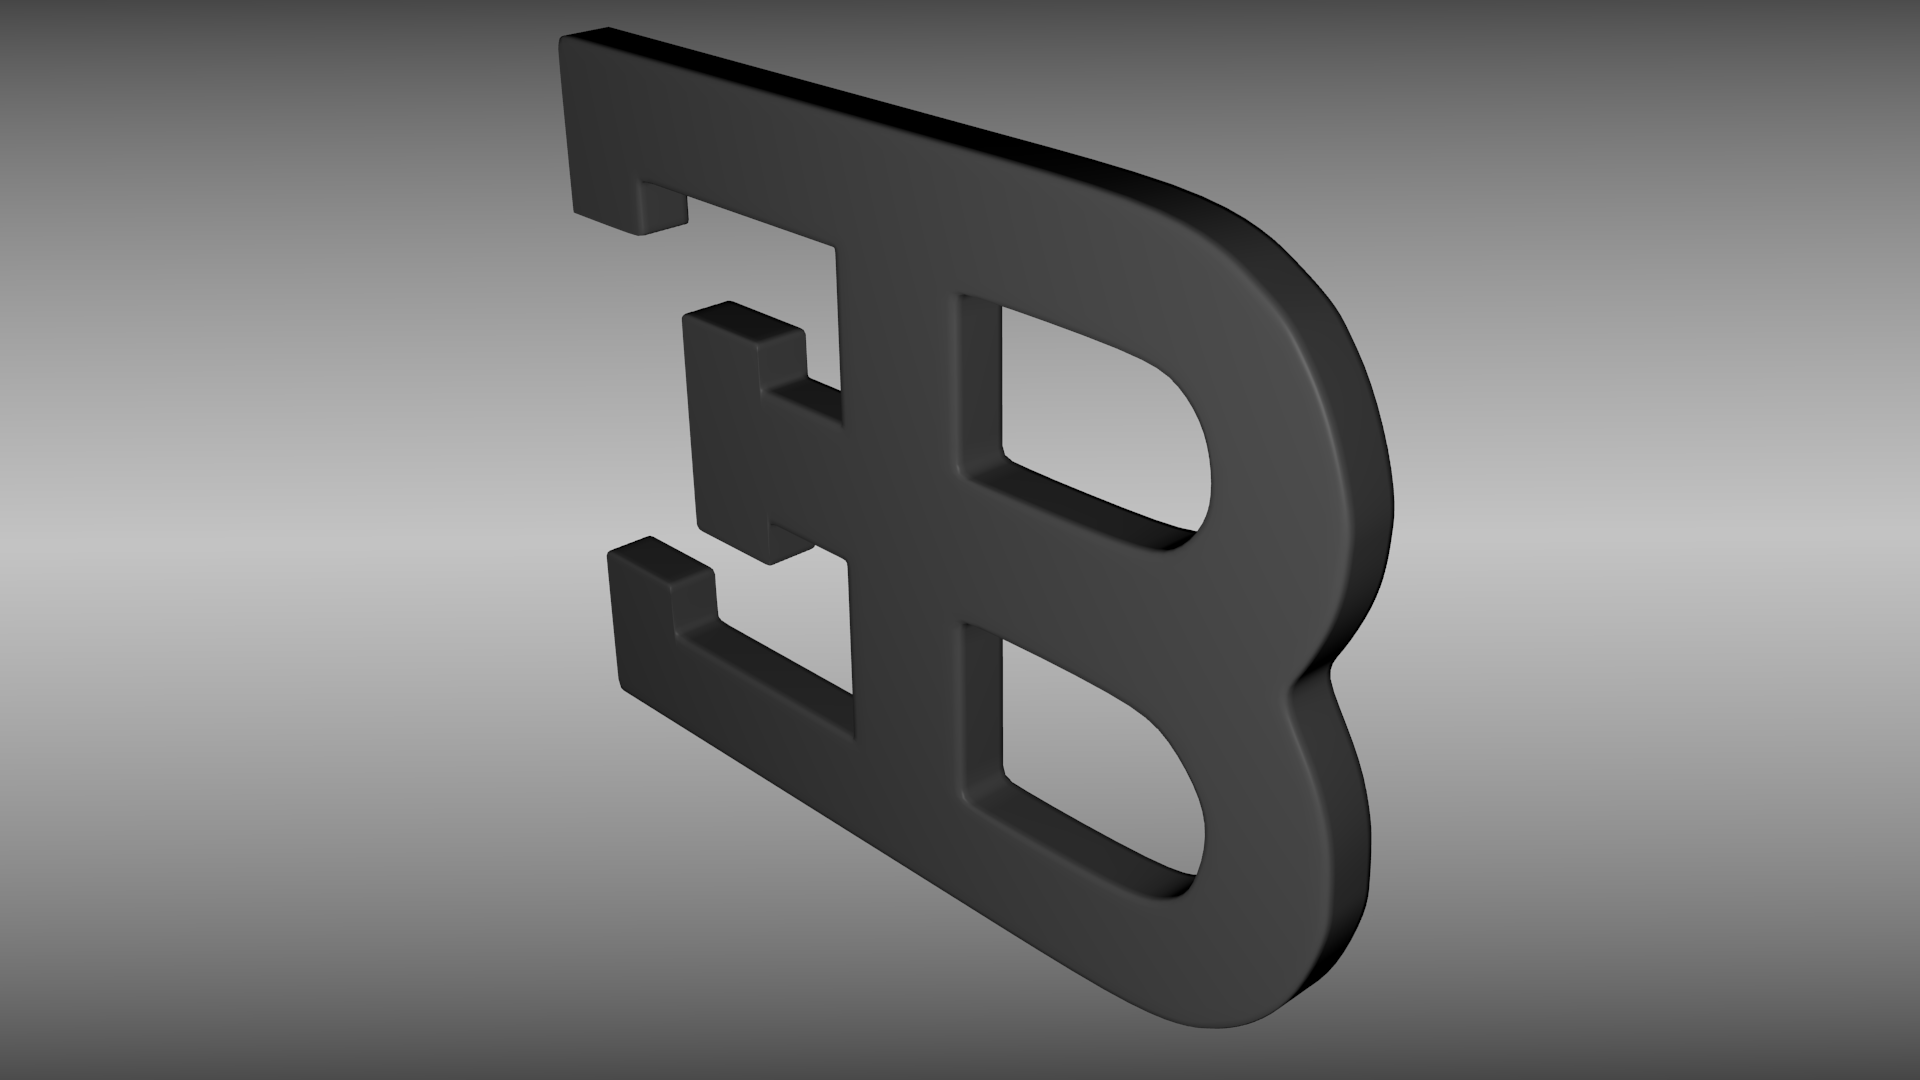 3D bugatti logo wallpaper. Desktop Background for Free HD